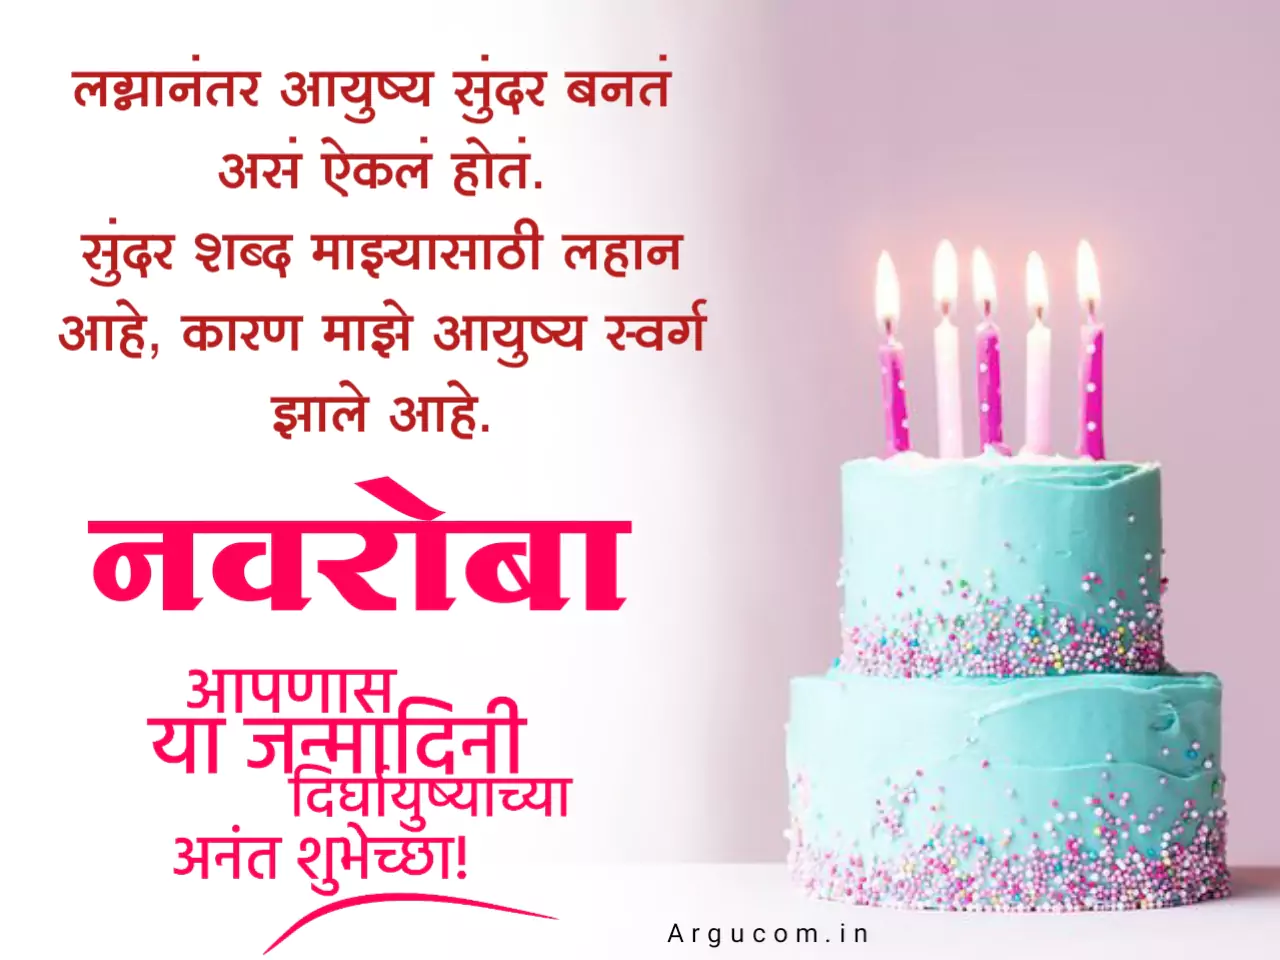 Happy birthday navroba in marathi